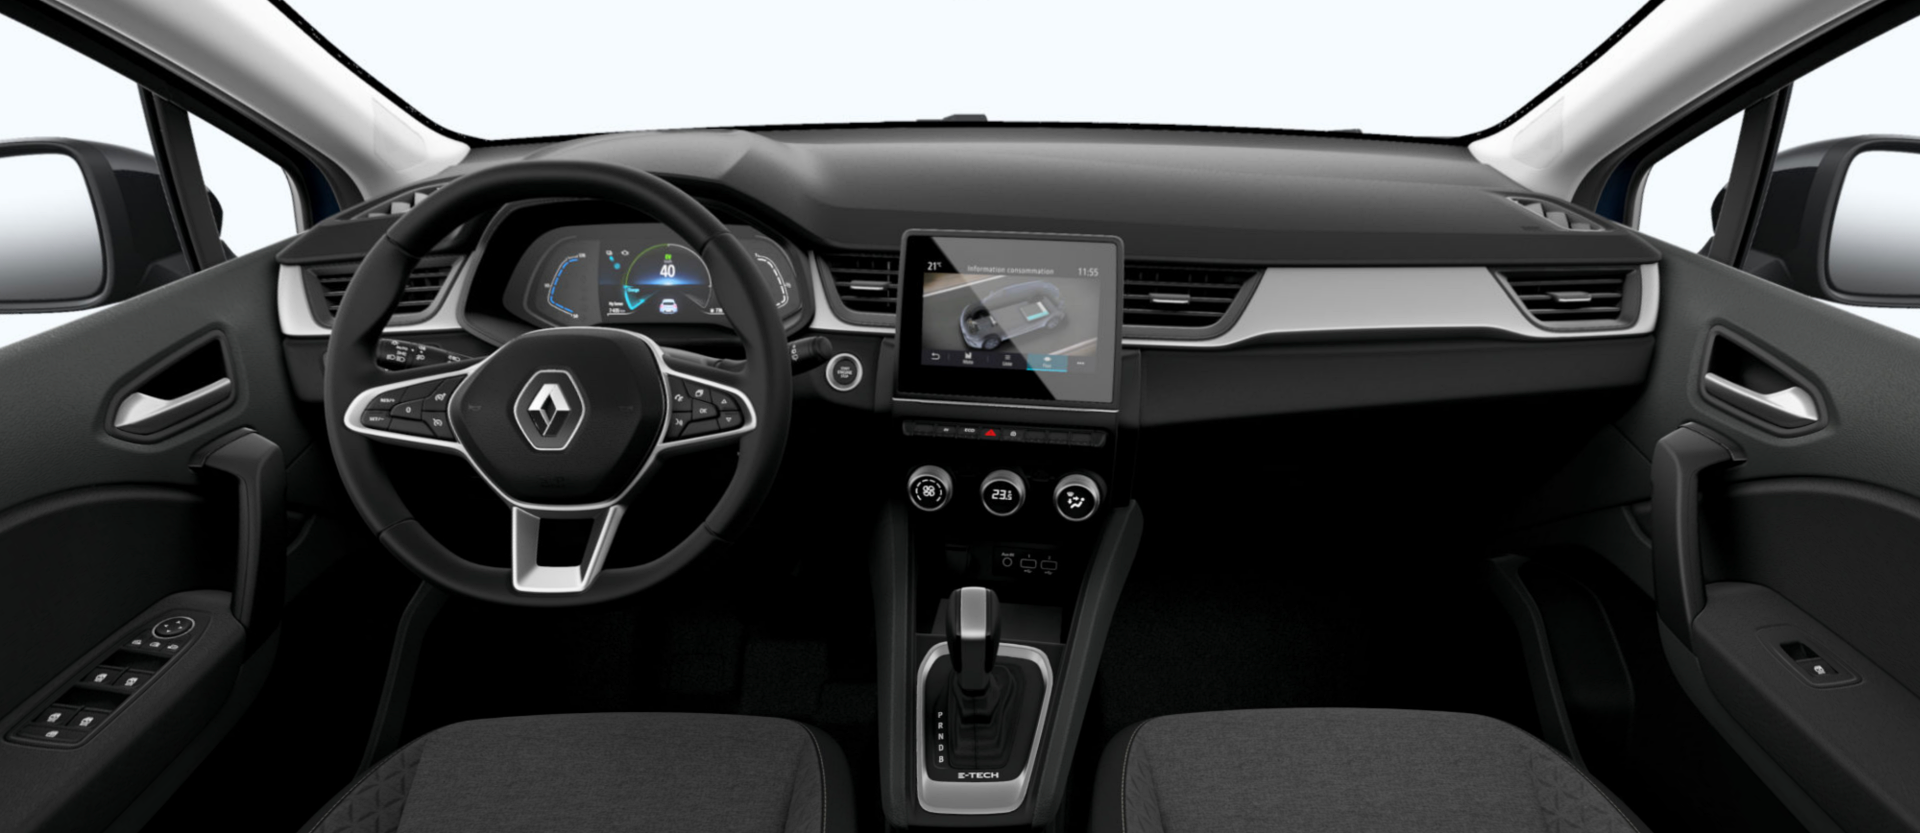 Aspecto interior del Renault Captur híbrido más asequible.